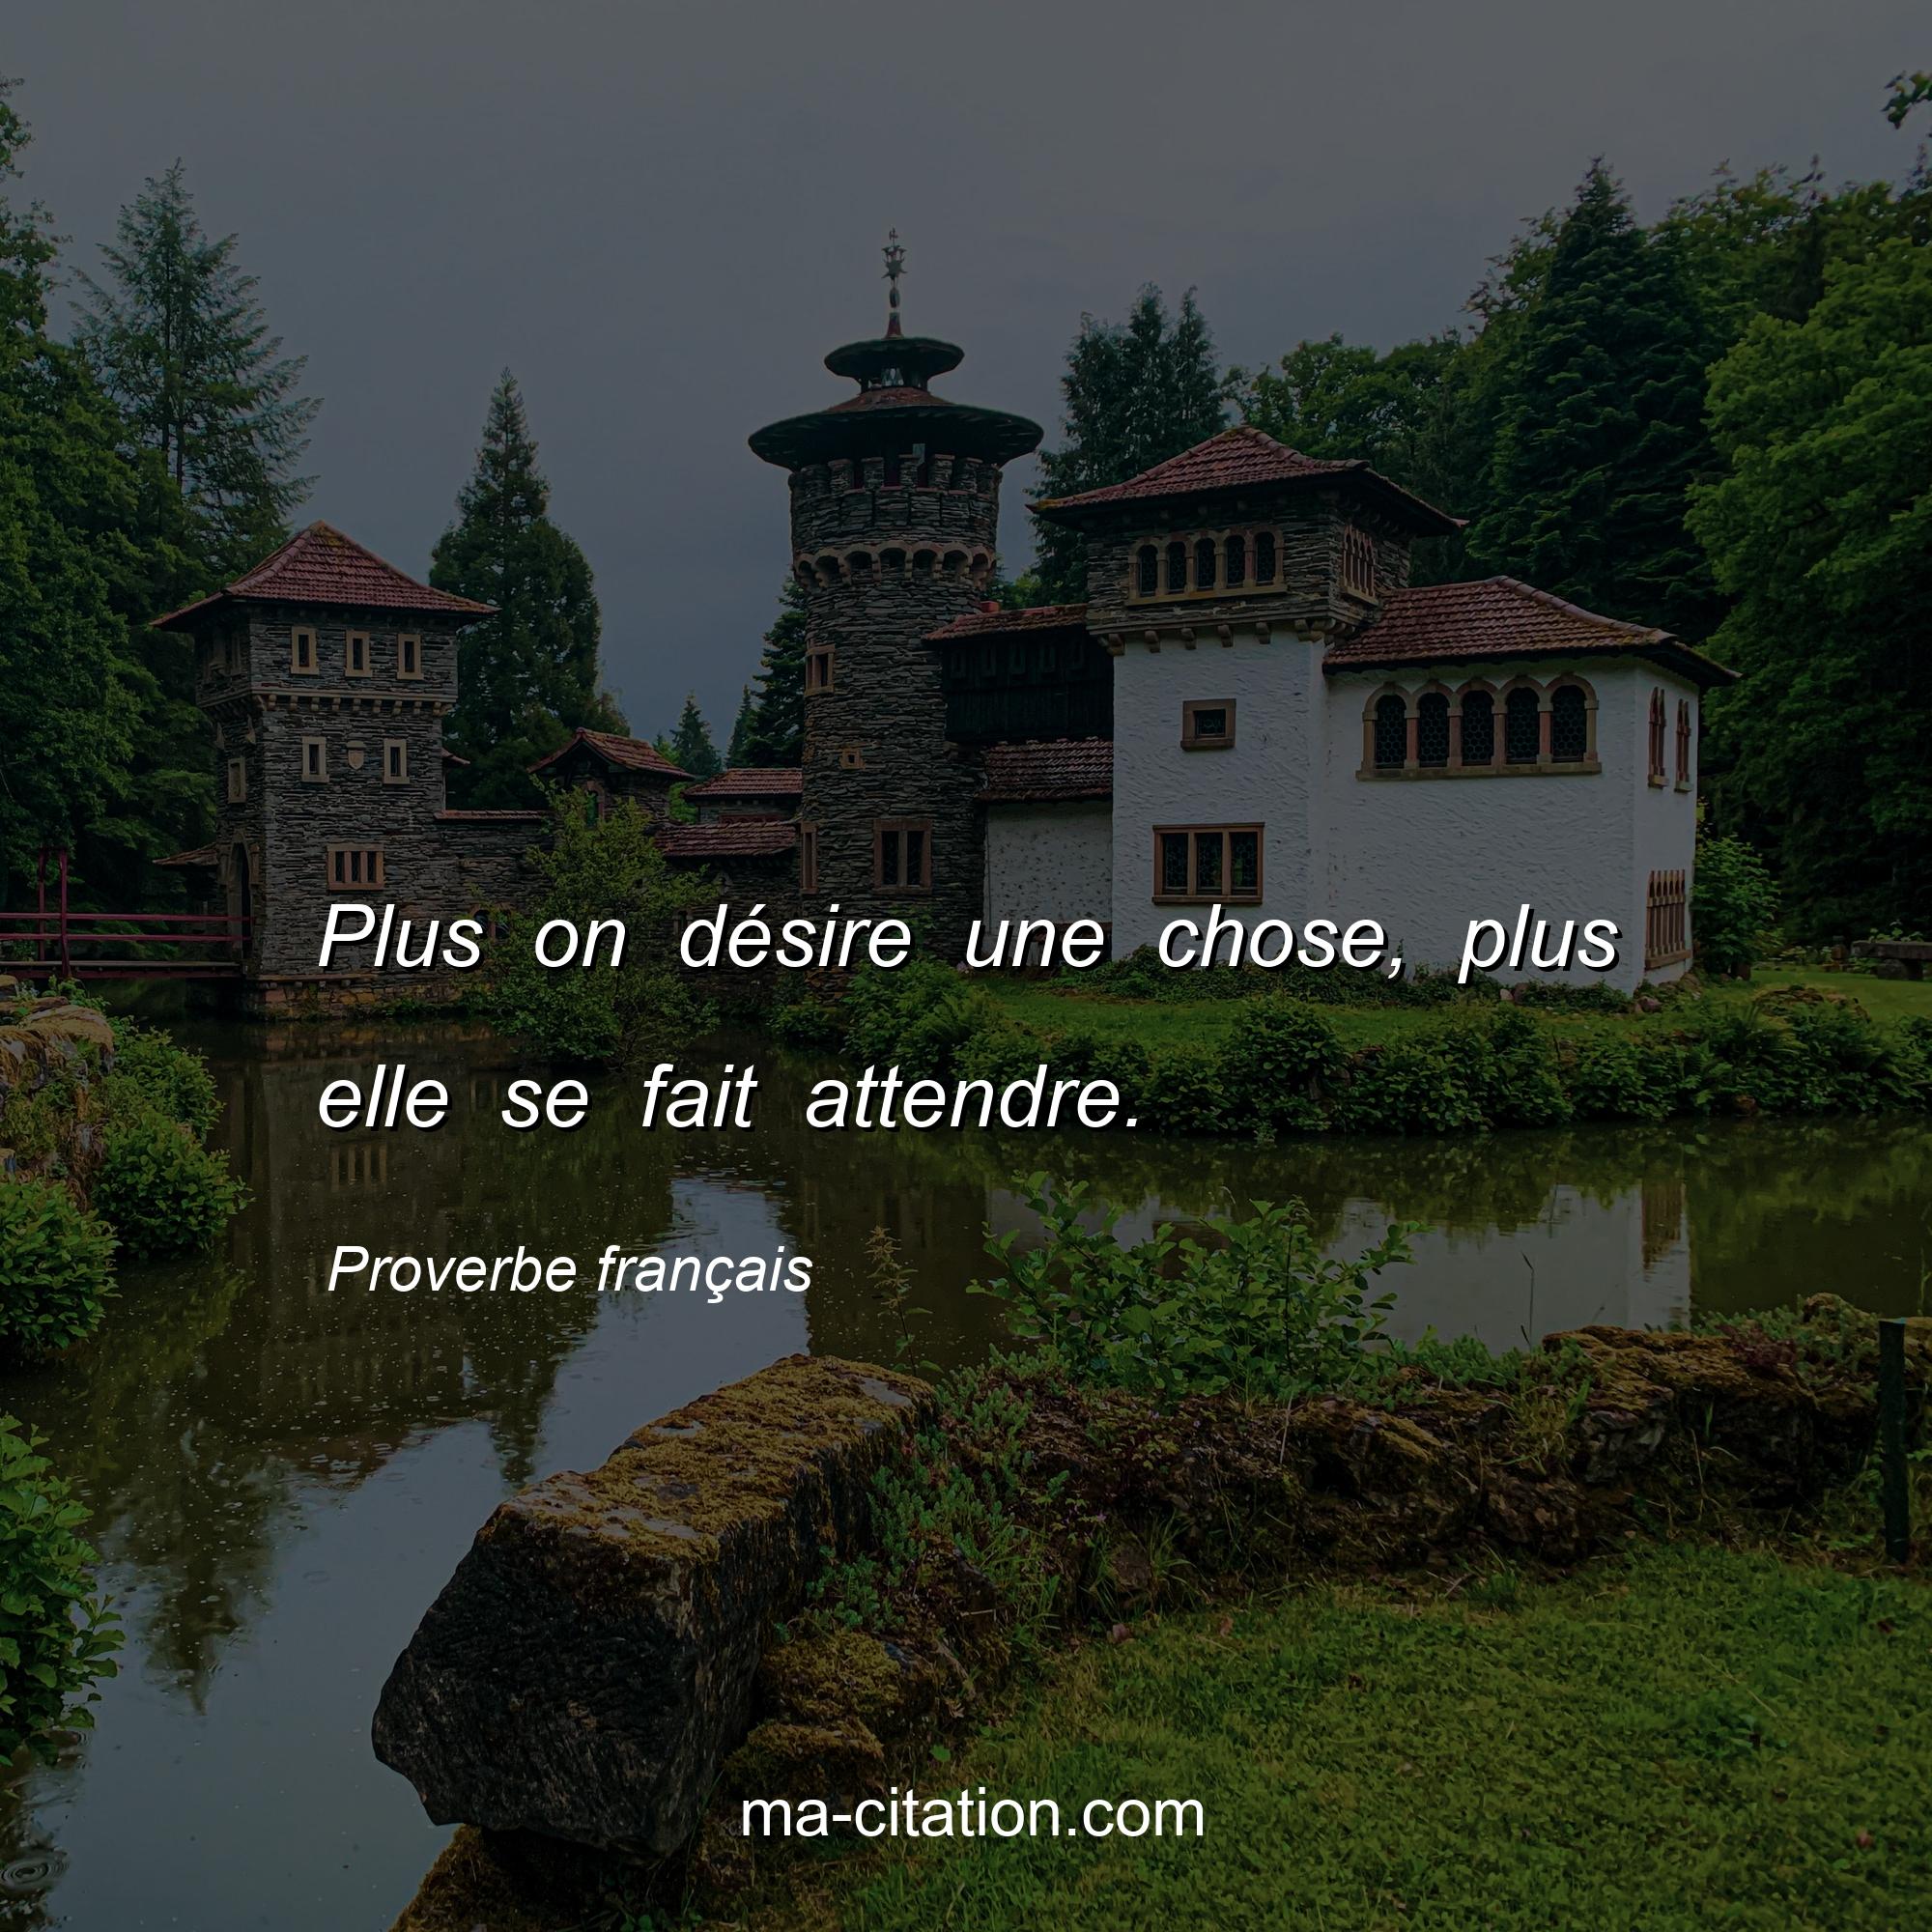 Proverbe français : Plus on désire une chose, plus elle se fait attendre.